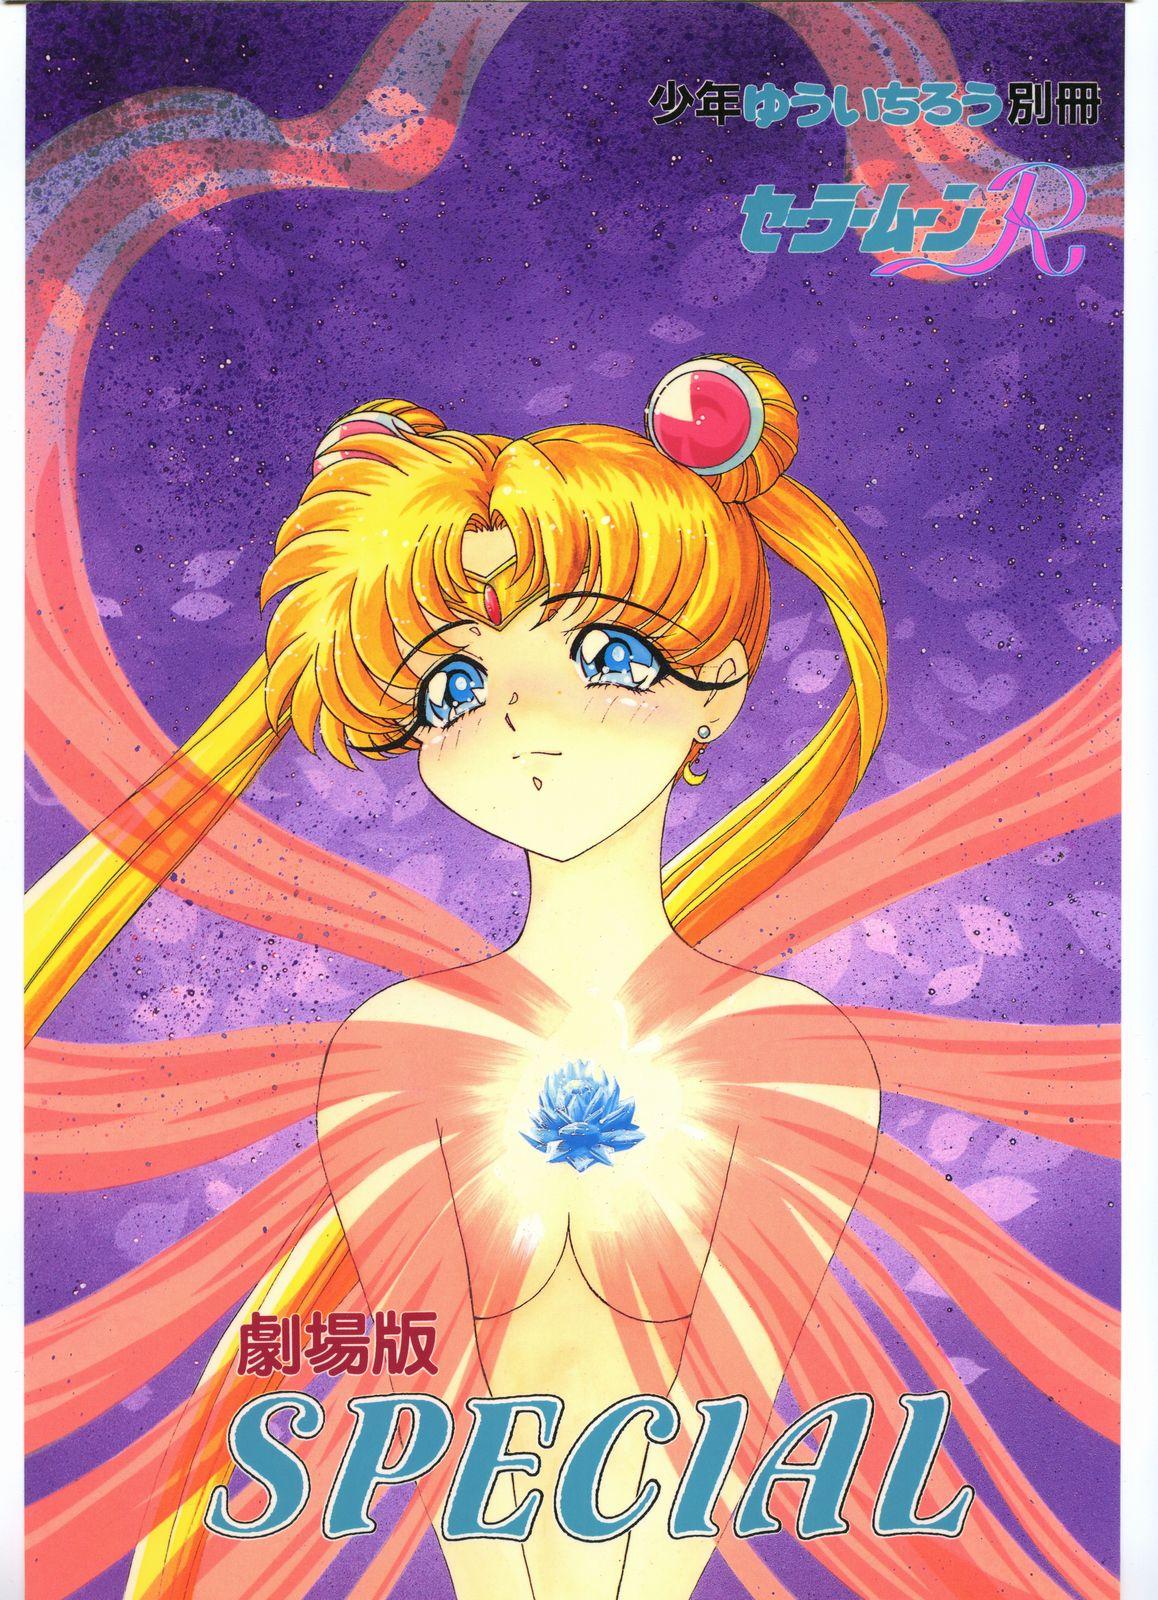 This Gekijouban SPECIAL - Sailor moon Blow Job Porn - Picture 1